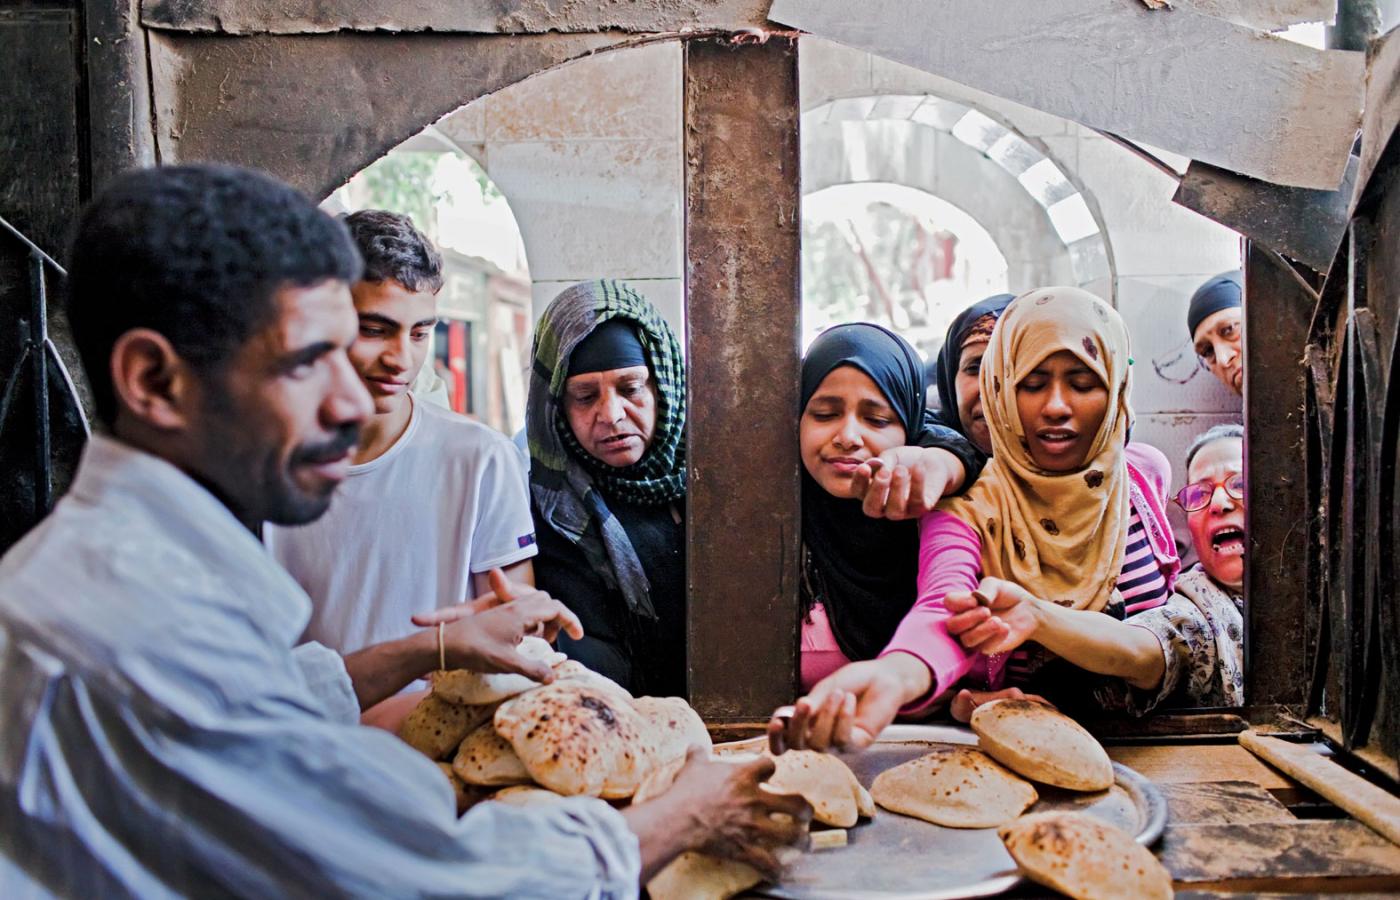 27 proc. Egipcjan żyje poniżej granicy ubóstwa, odebranie choćby części subsydiowanego przez państwo chleba może spowodować społeczny wybuch.